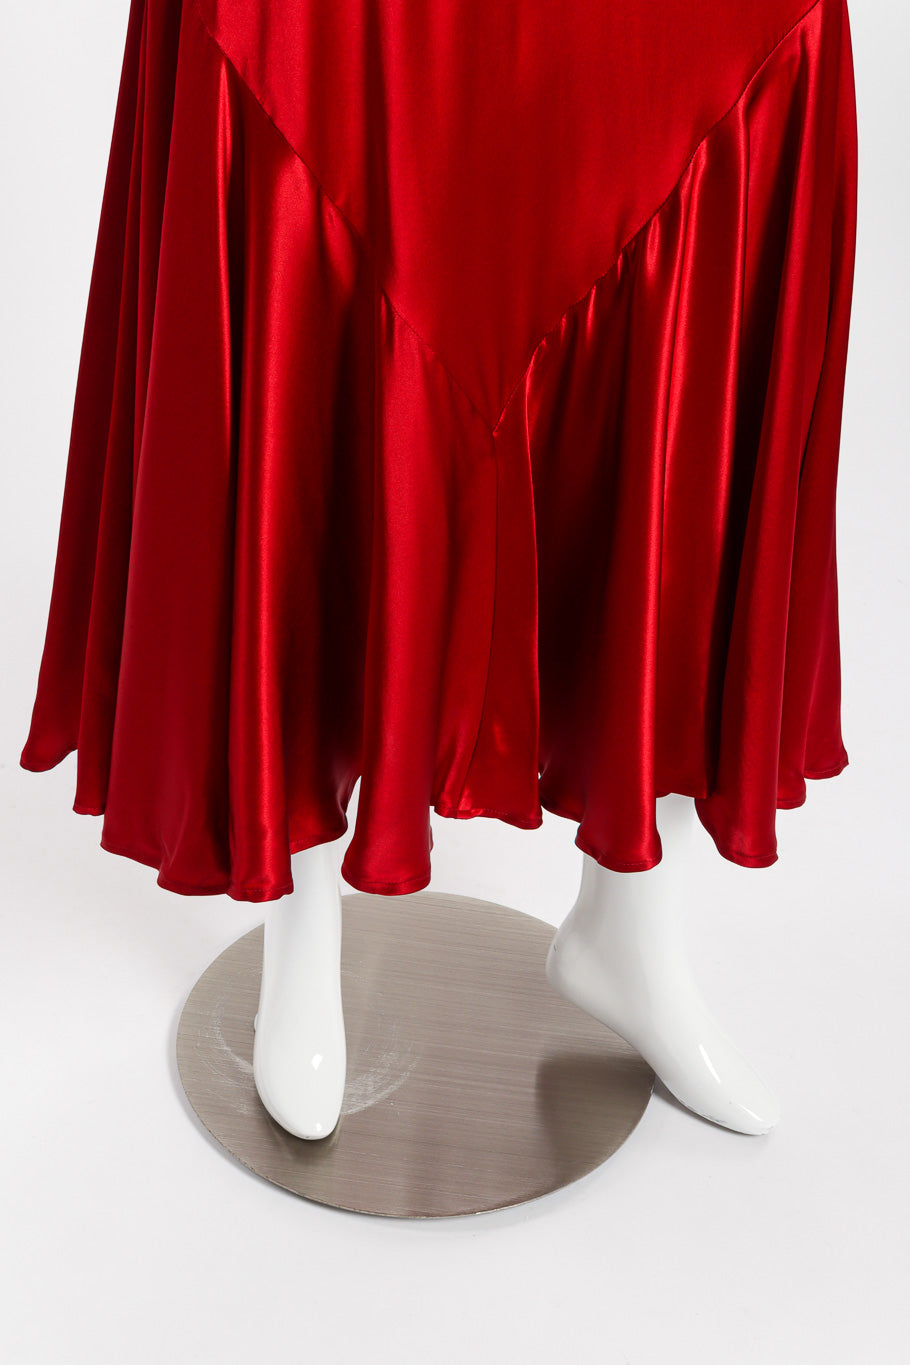 Satin slip dress by Bonnie Strauss on mannequin hem @recessla